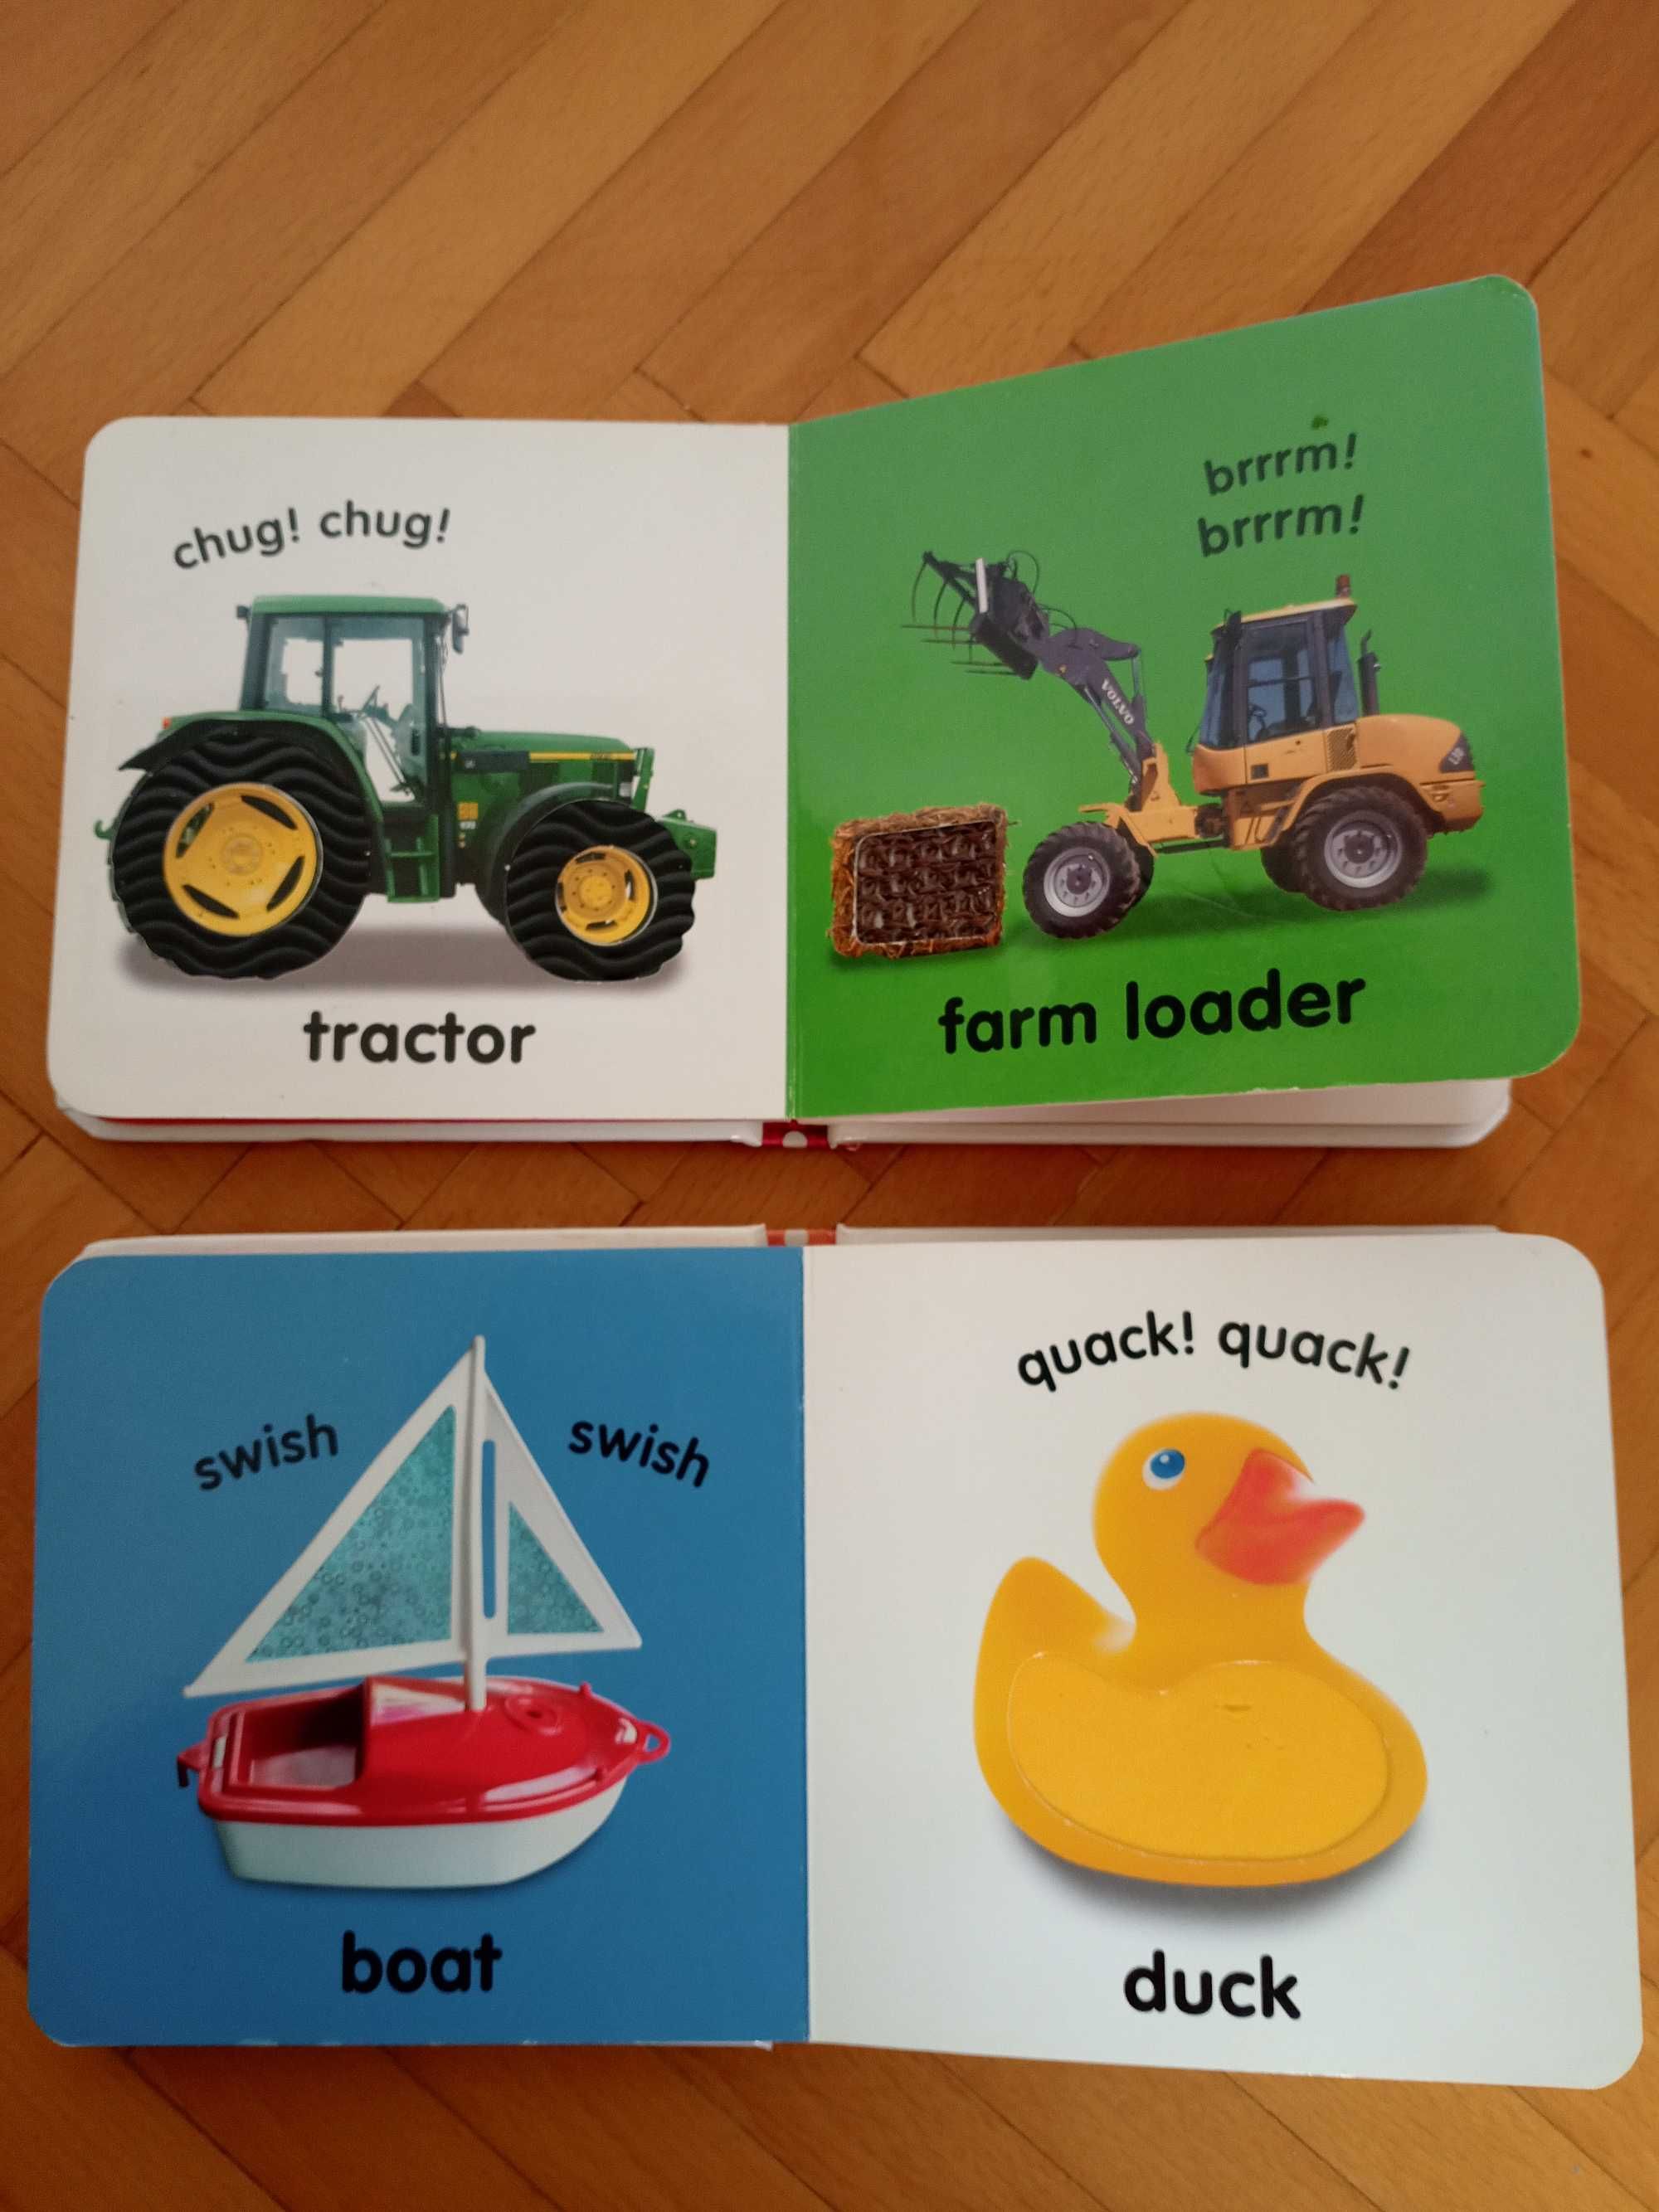 Дитячі розвиваючі книжки на англ мові Baby Touch and Feel